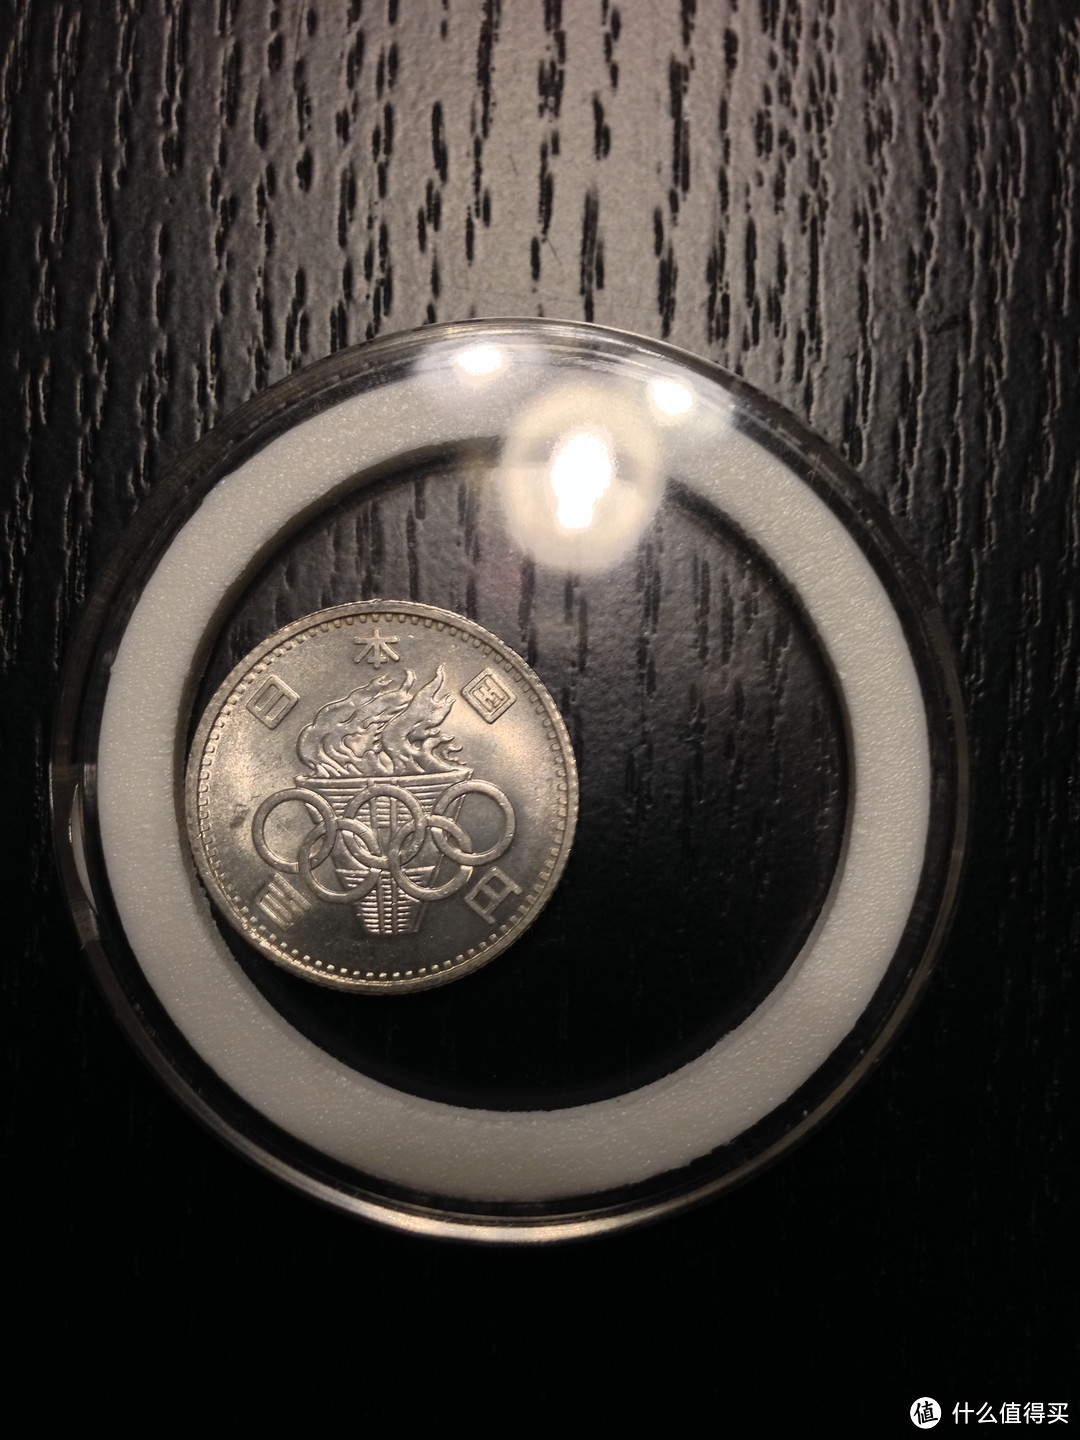 日本的银币相对就小气多啦，这是昭和39年日本举办奥运会时发行的纪念银币，重量在4克左右，大概是五毛钱硬币的大小，适合把玩把玩。